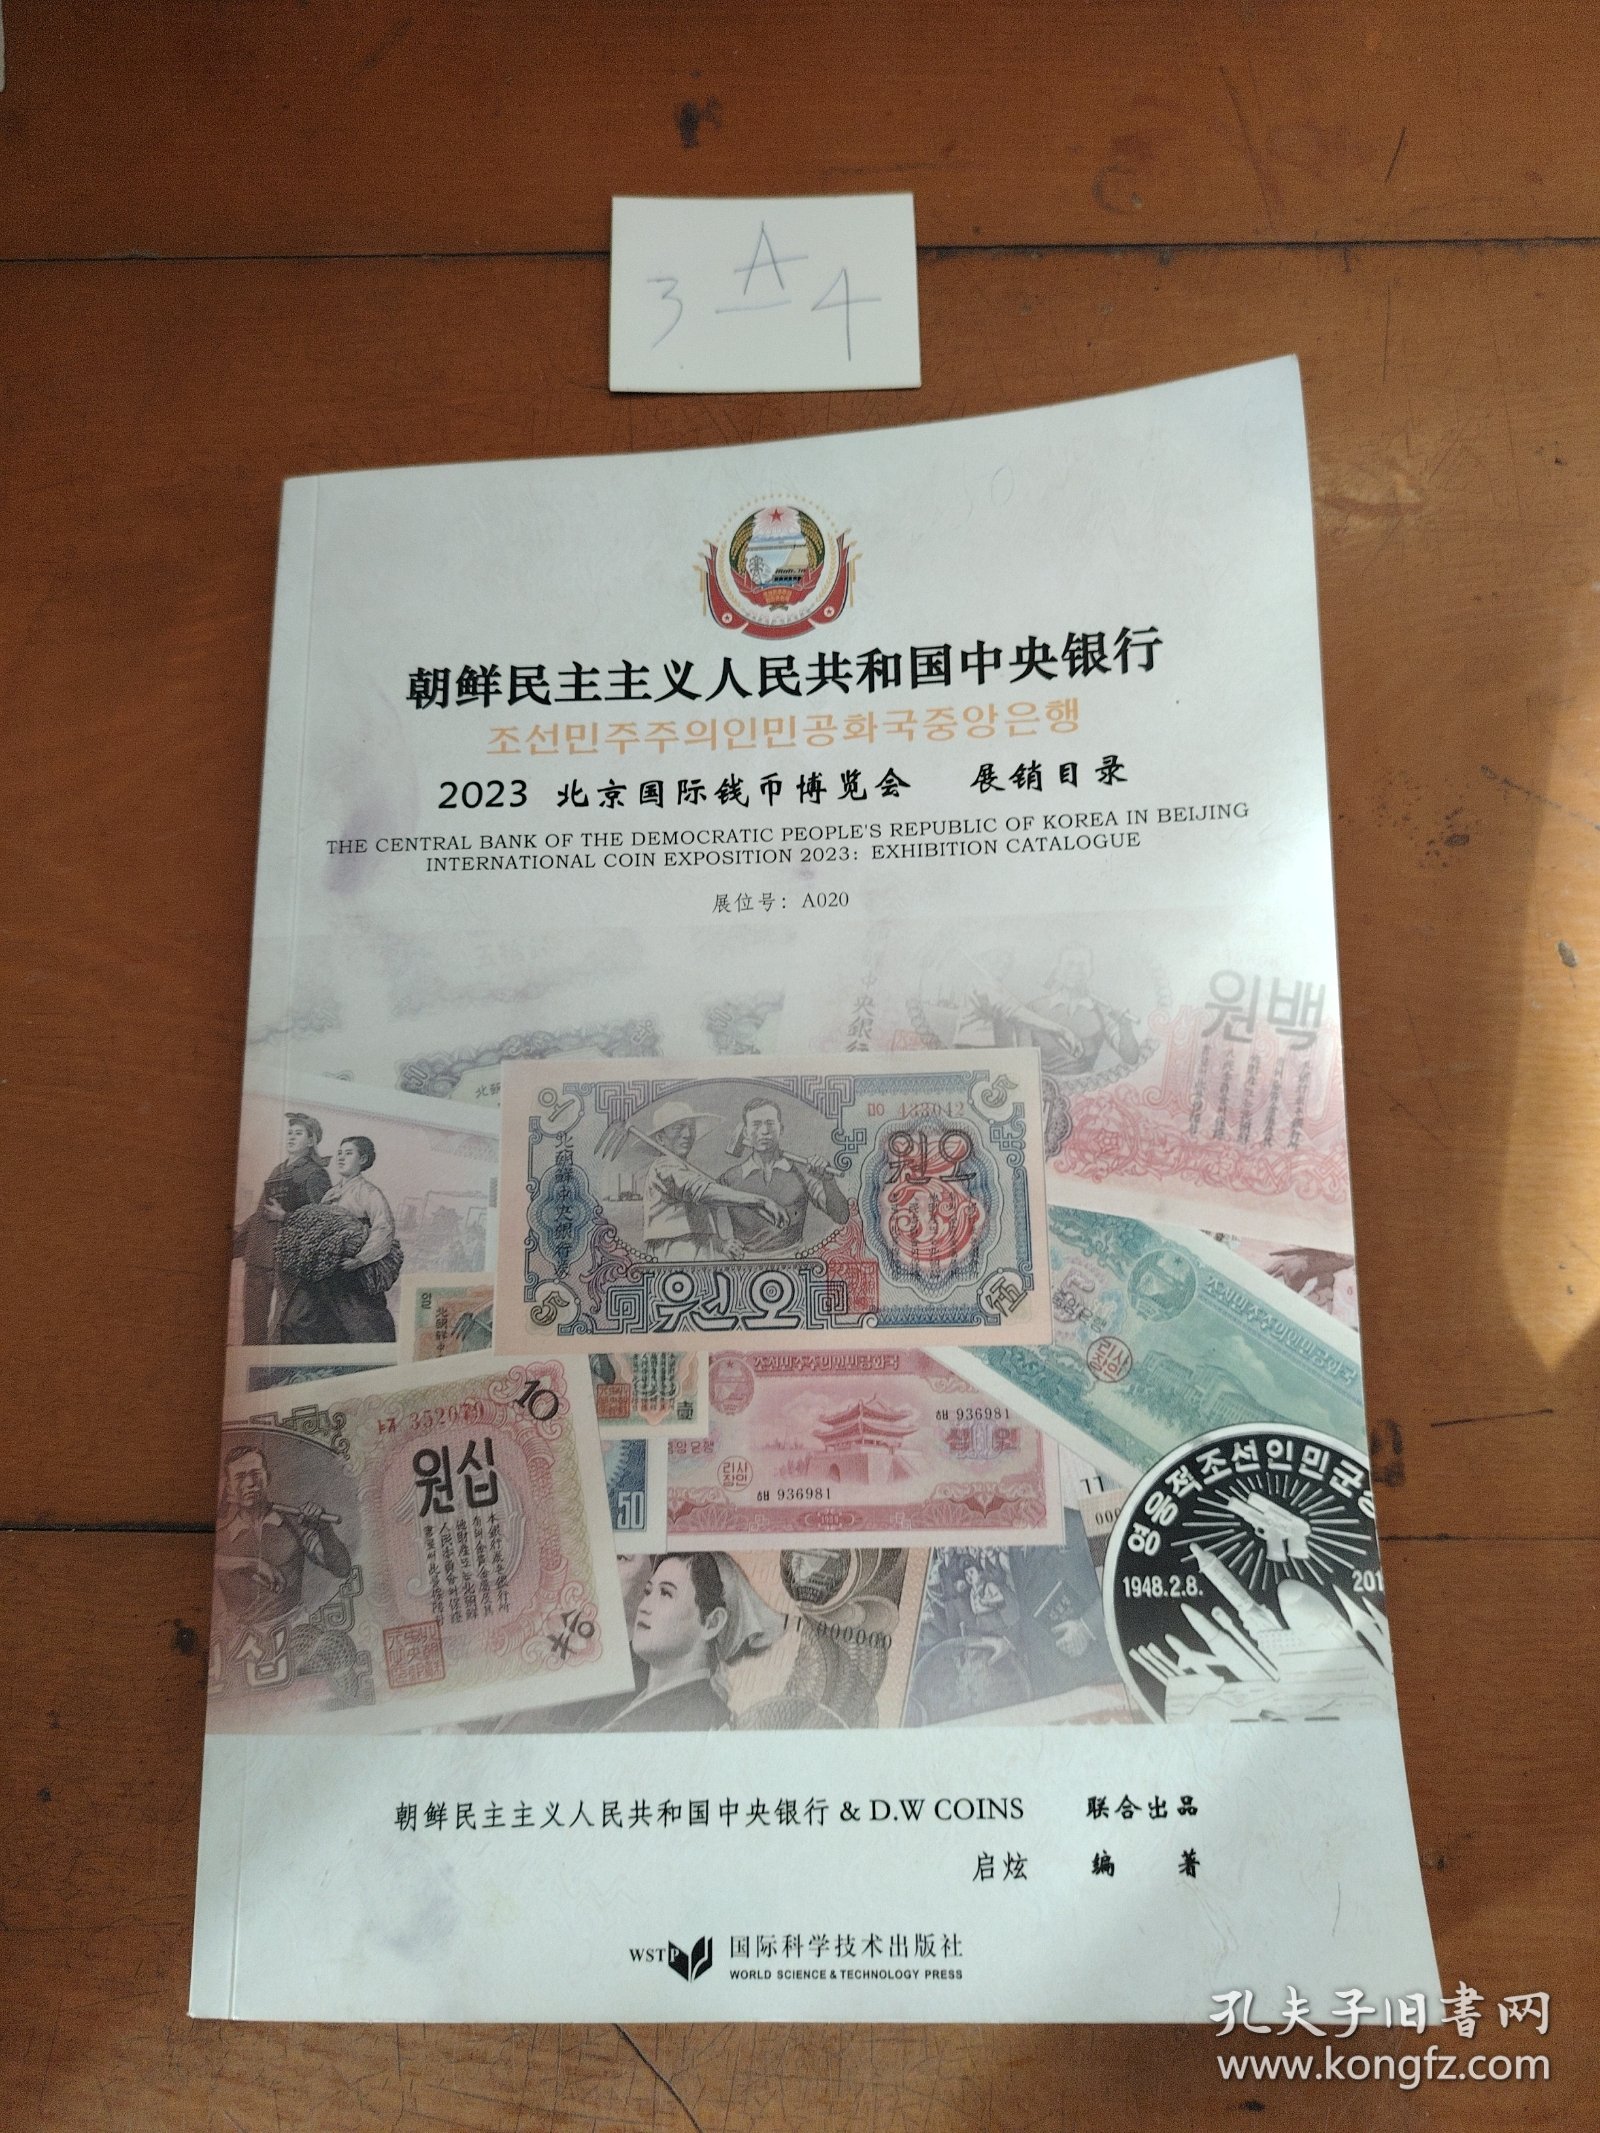 朝鲜民主主义人民共和国中央银行2023北京国际钱币博览会展销目录